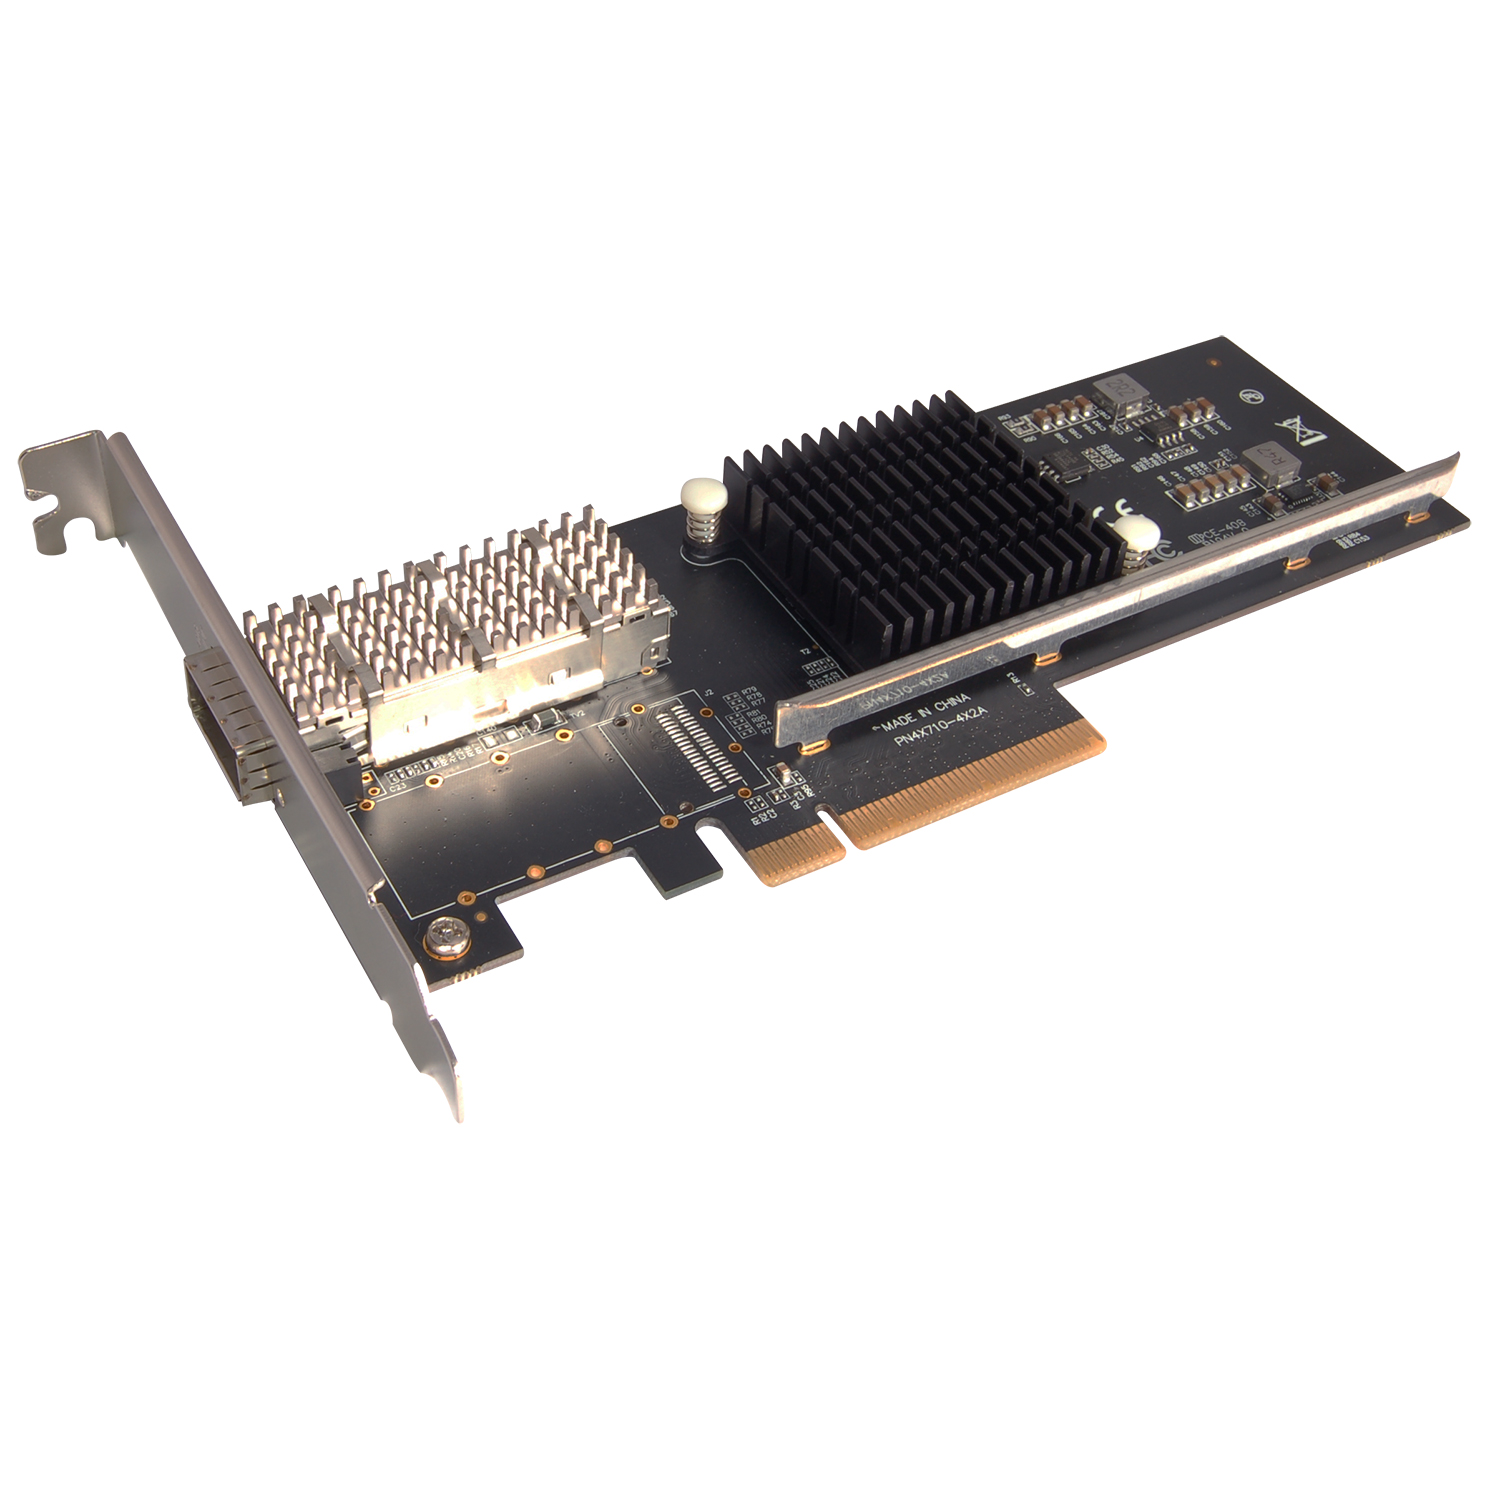 N-560 PCIe 1-Port 40G QSFP+ Netword Card